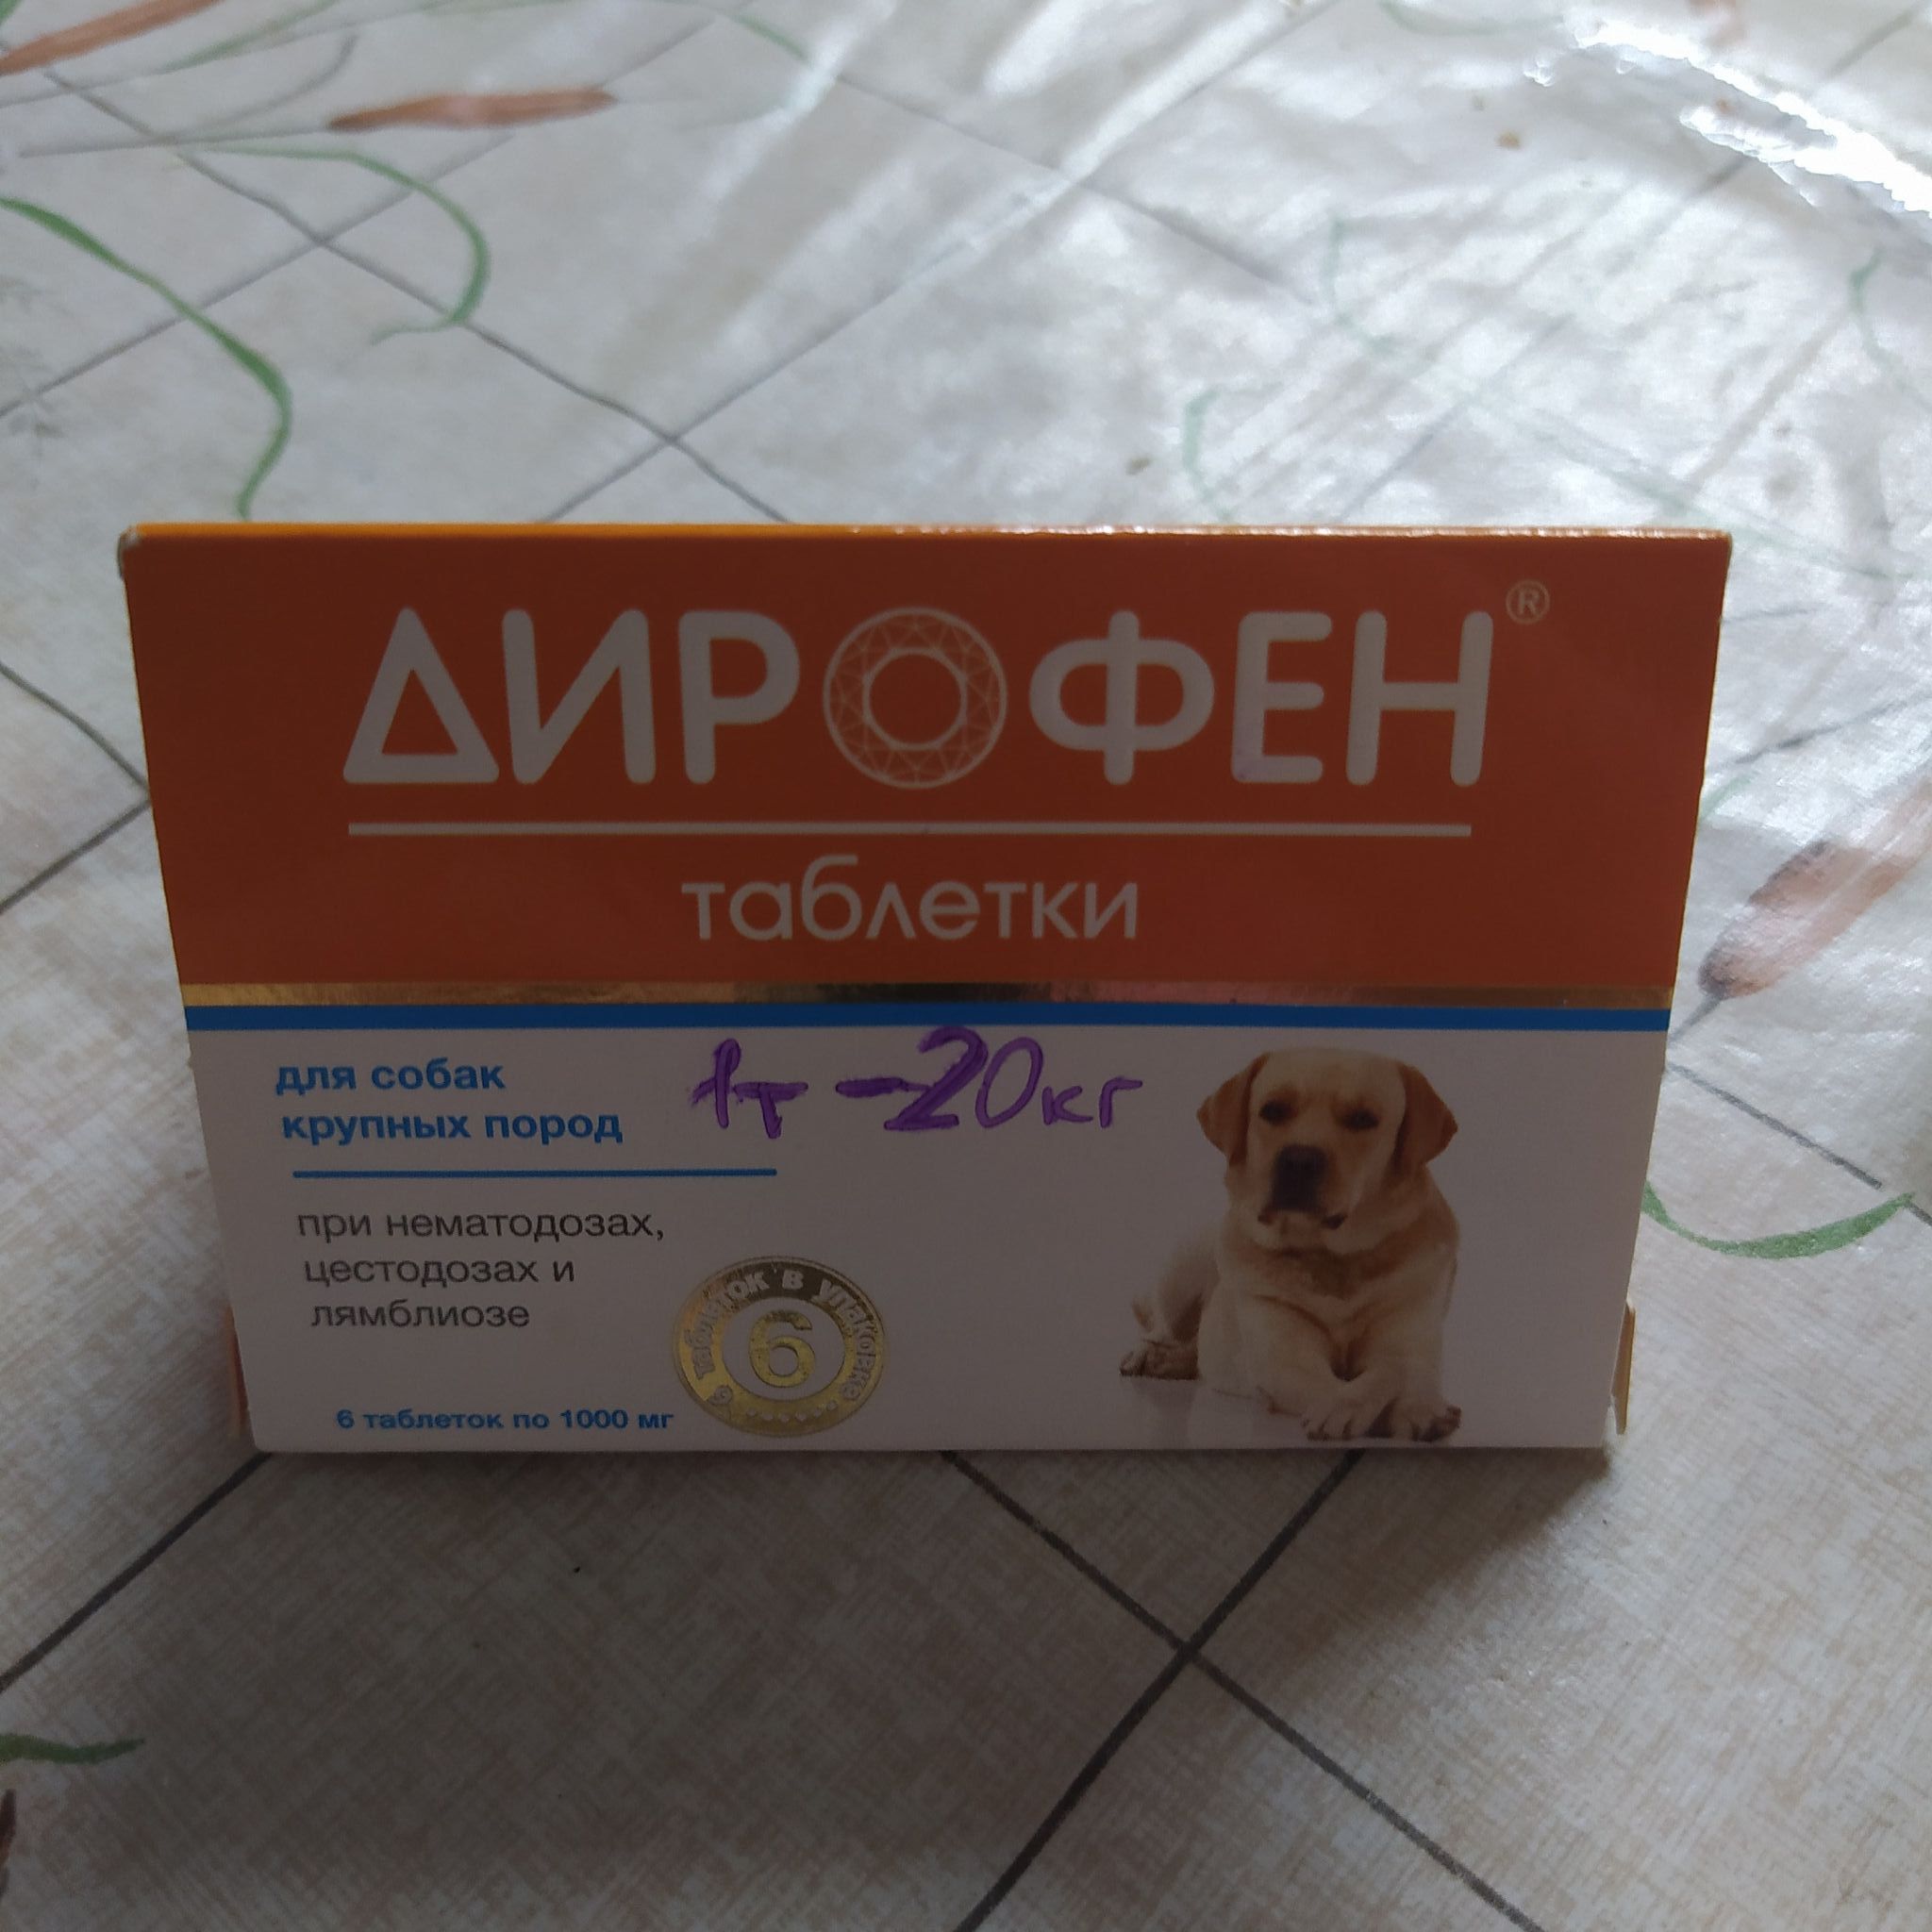 Дирофен применение для собак